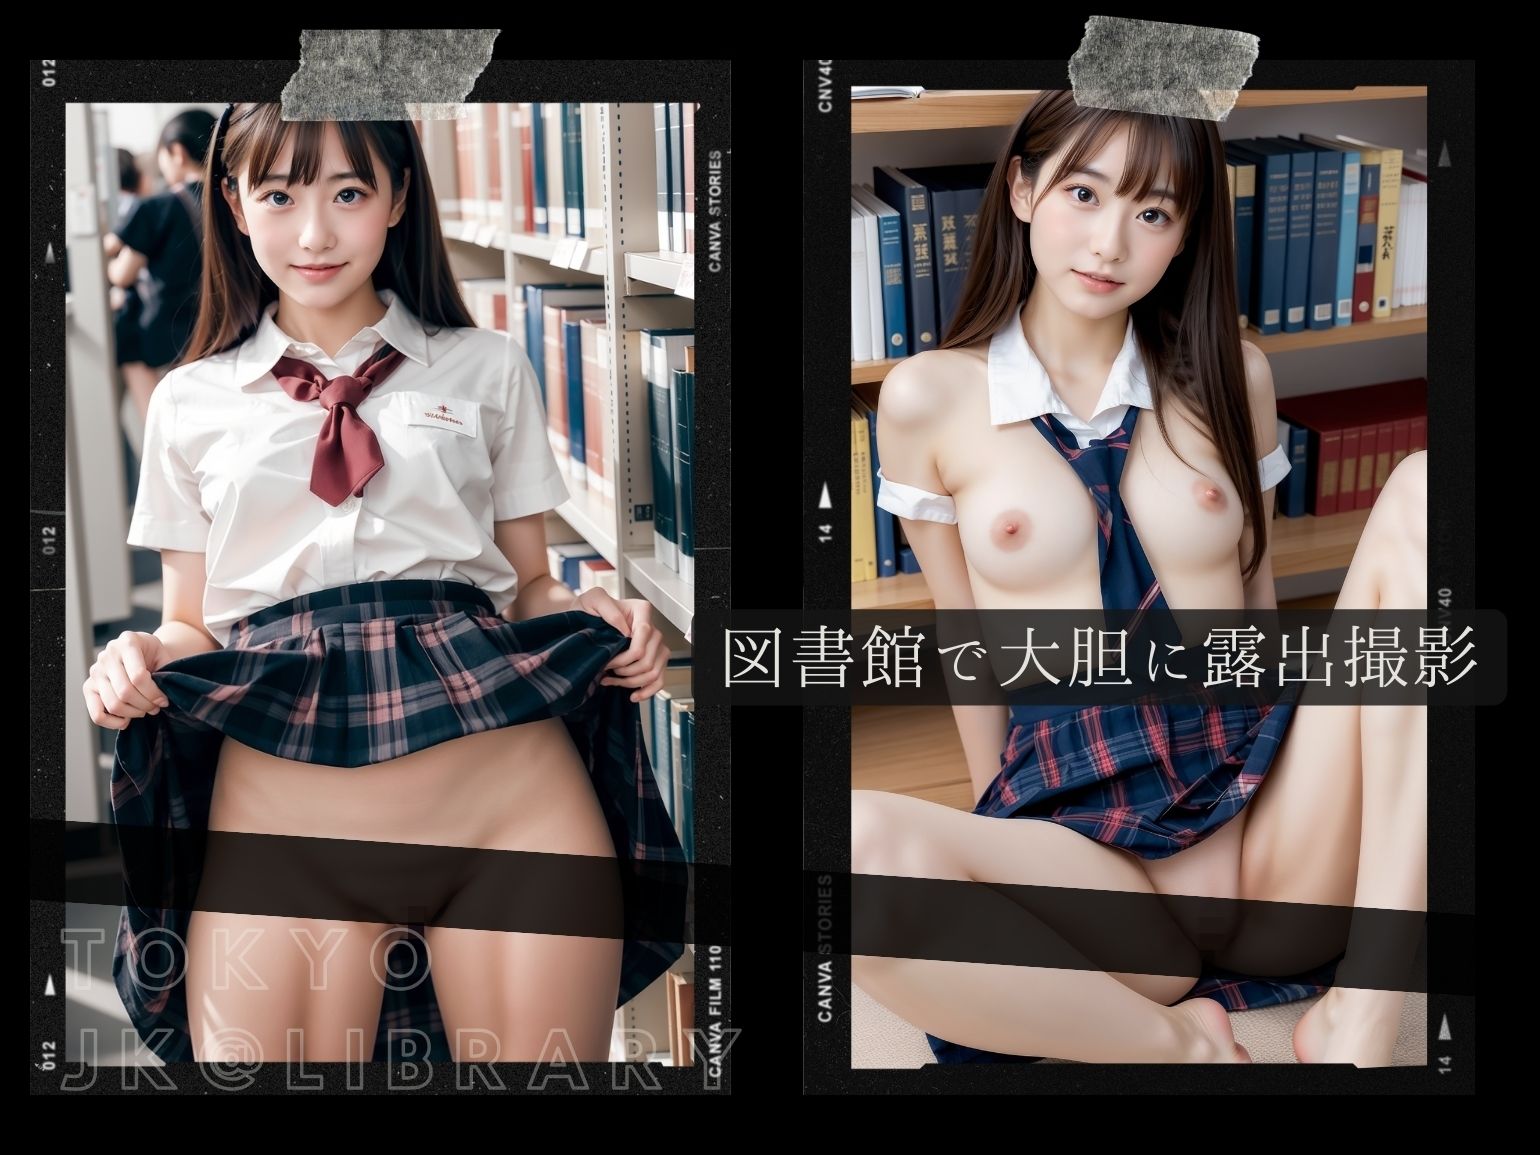 東京露出図書館 - 可愛すぎるJKの露出セックス_3